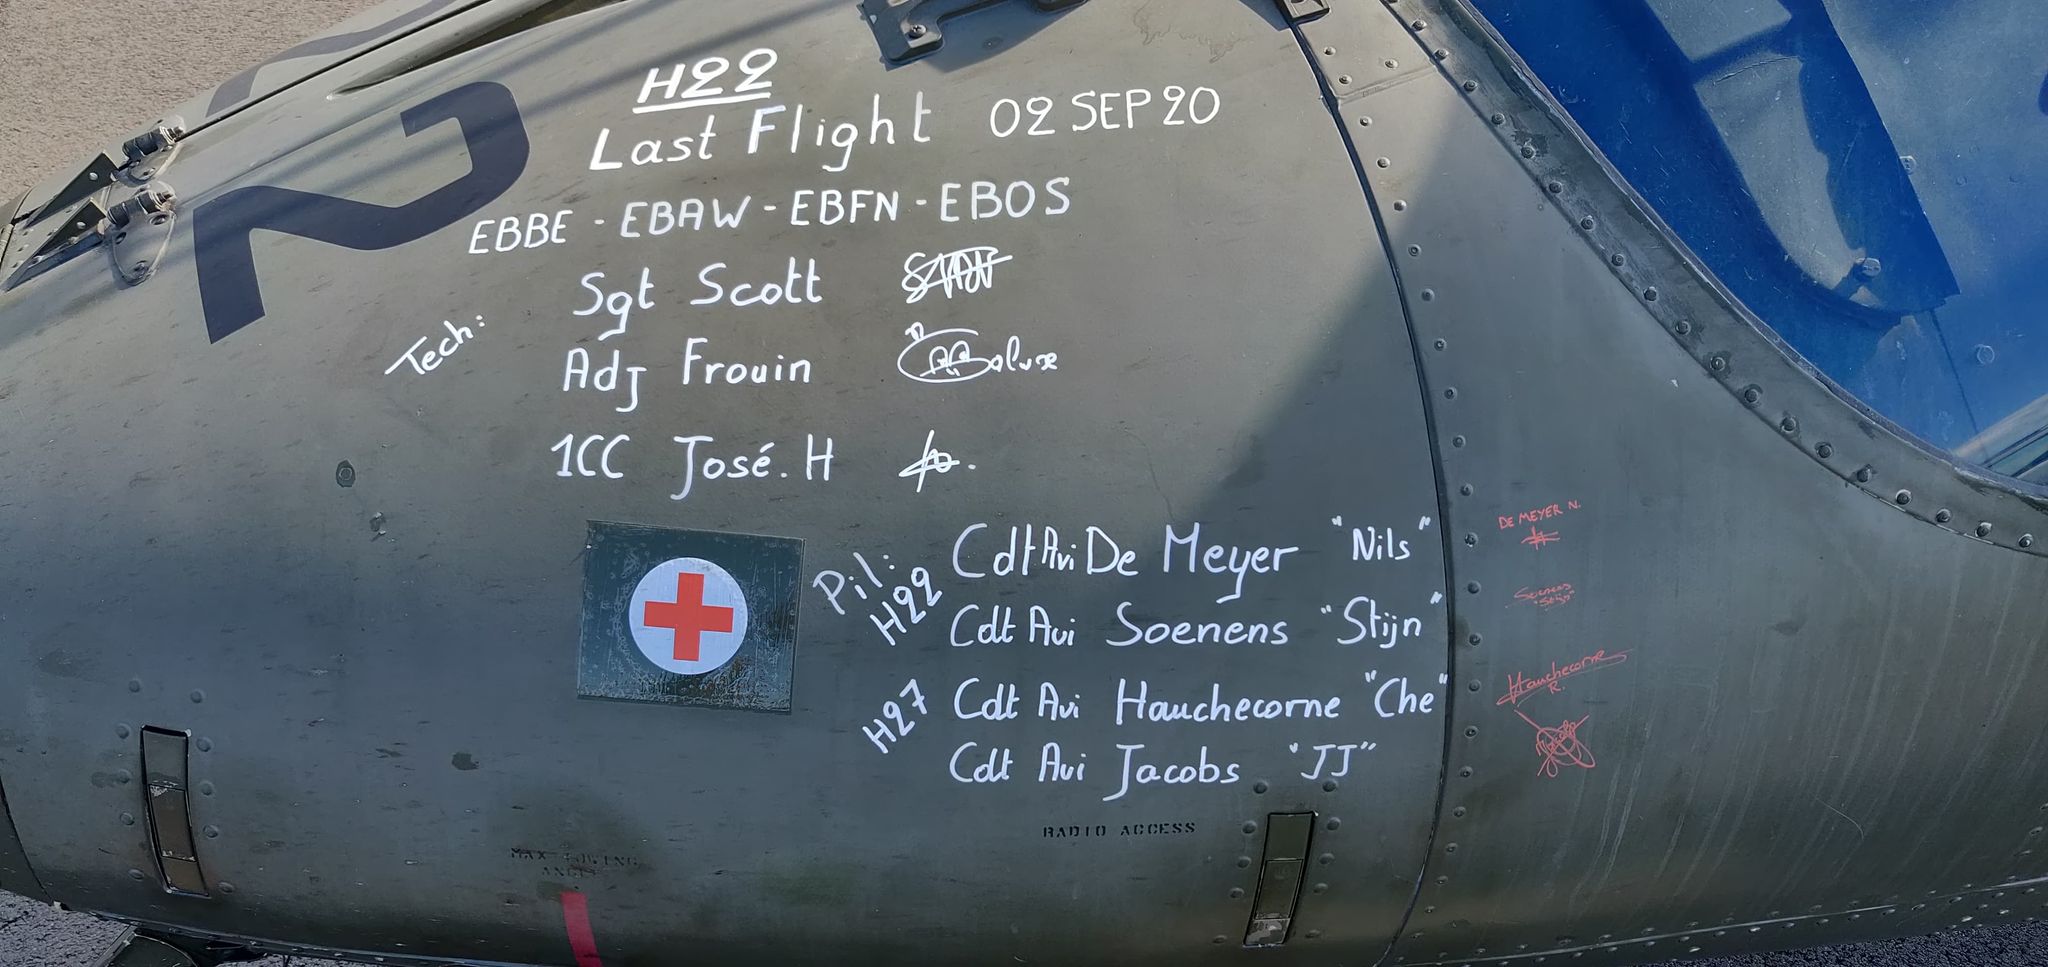 Handtekeningen van de crew laatste vlucht A109 H221